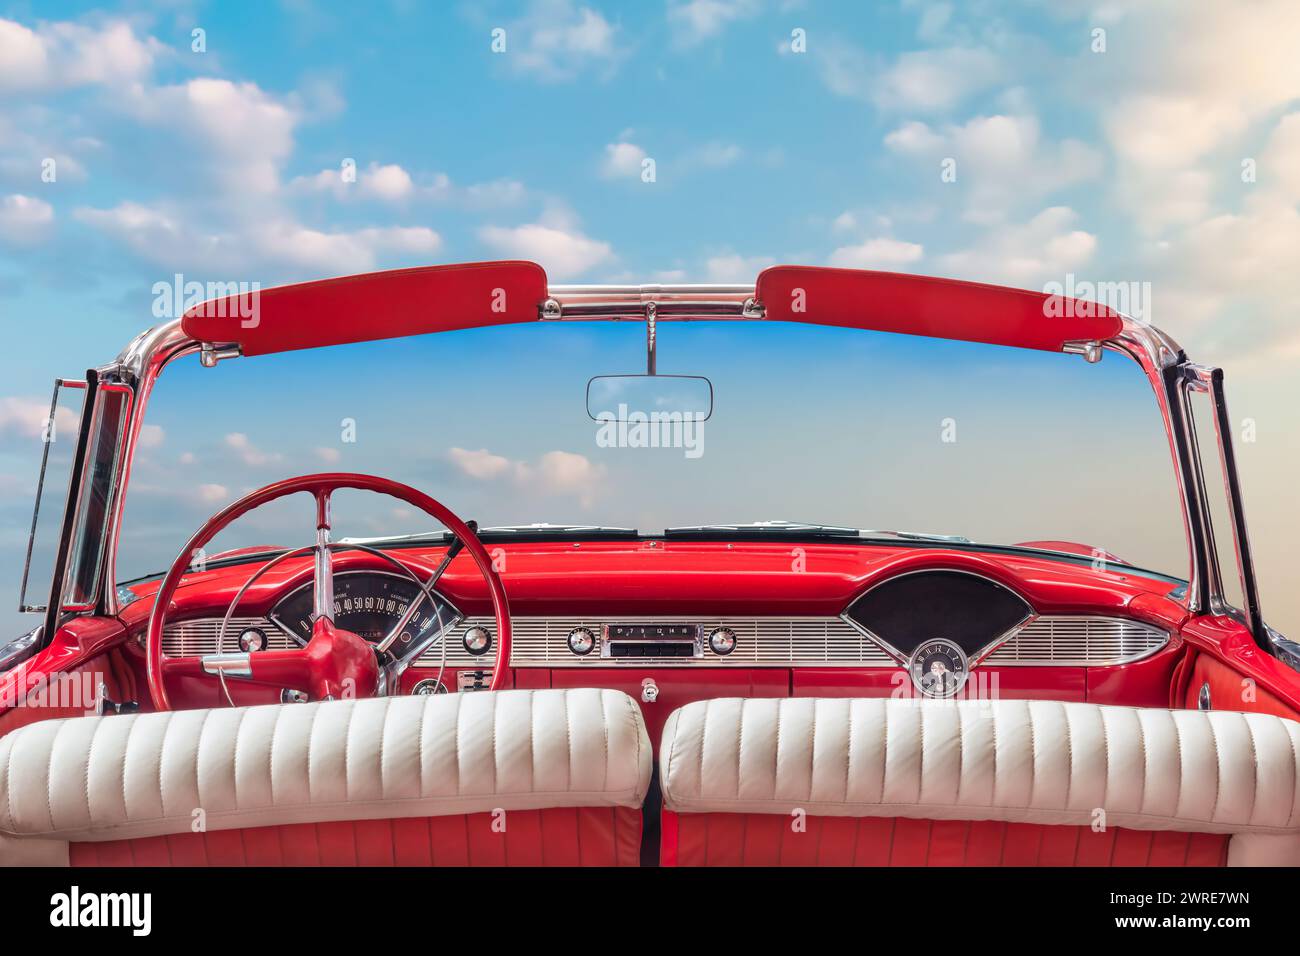 Fahreransicht eines klassischen roten Oldtimers mit offenem amerikanischem Cabrio vor einem sonnigen blauen Himmel Stockfoto